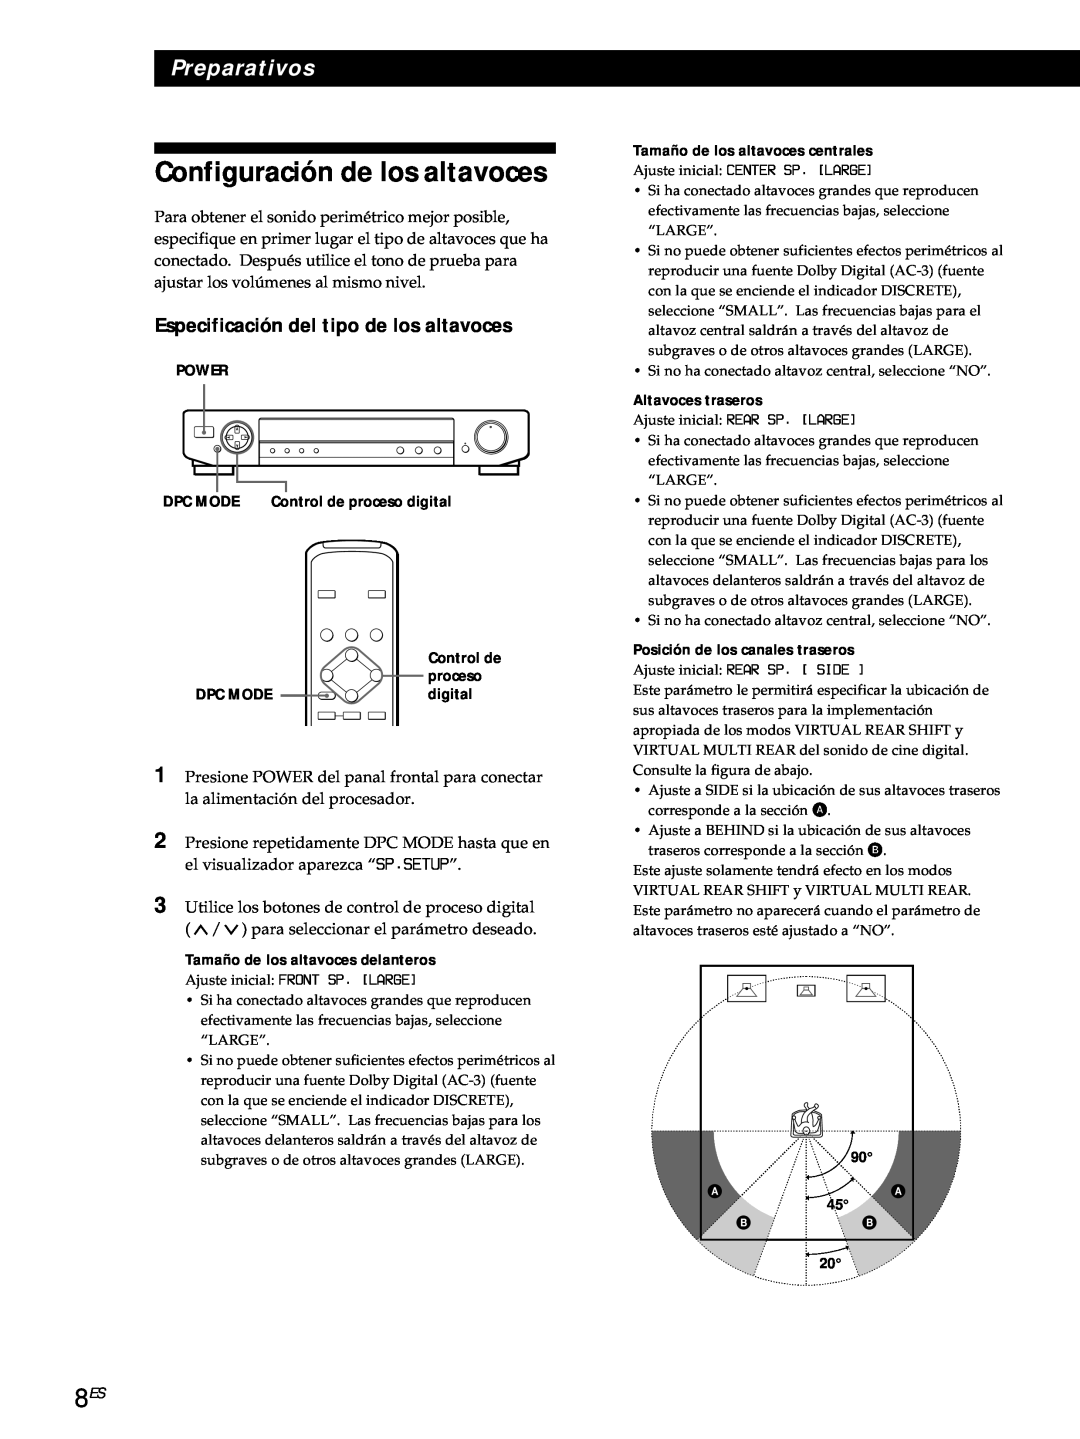 Sony SDP-E800 operating instructions Configuración de los altavoces, Especificación del tipo de los altavoces, Preparativos 